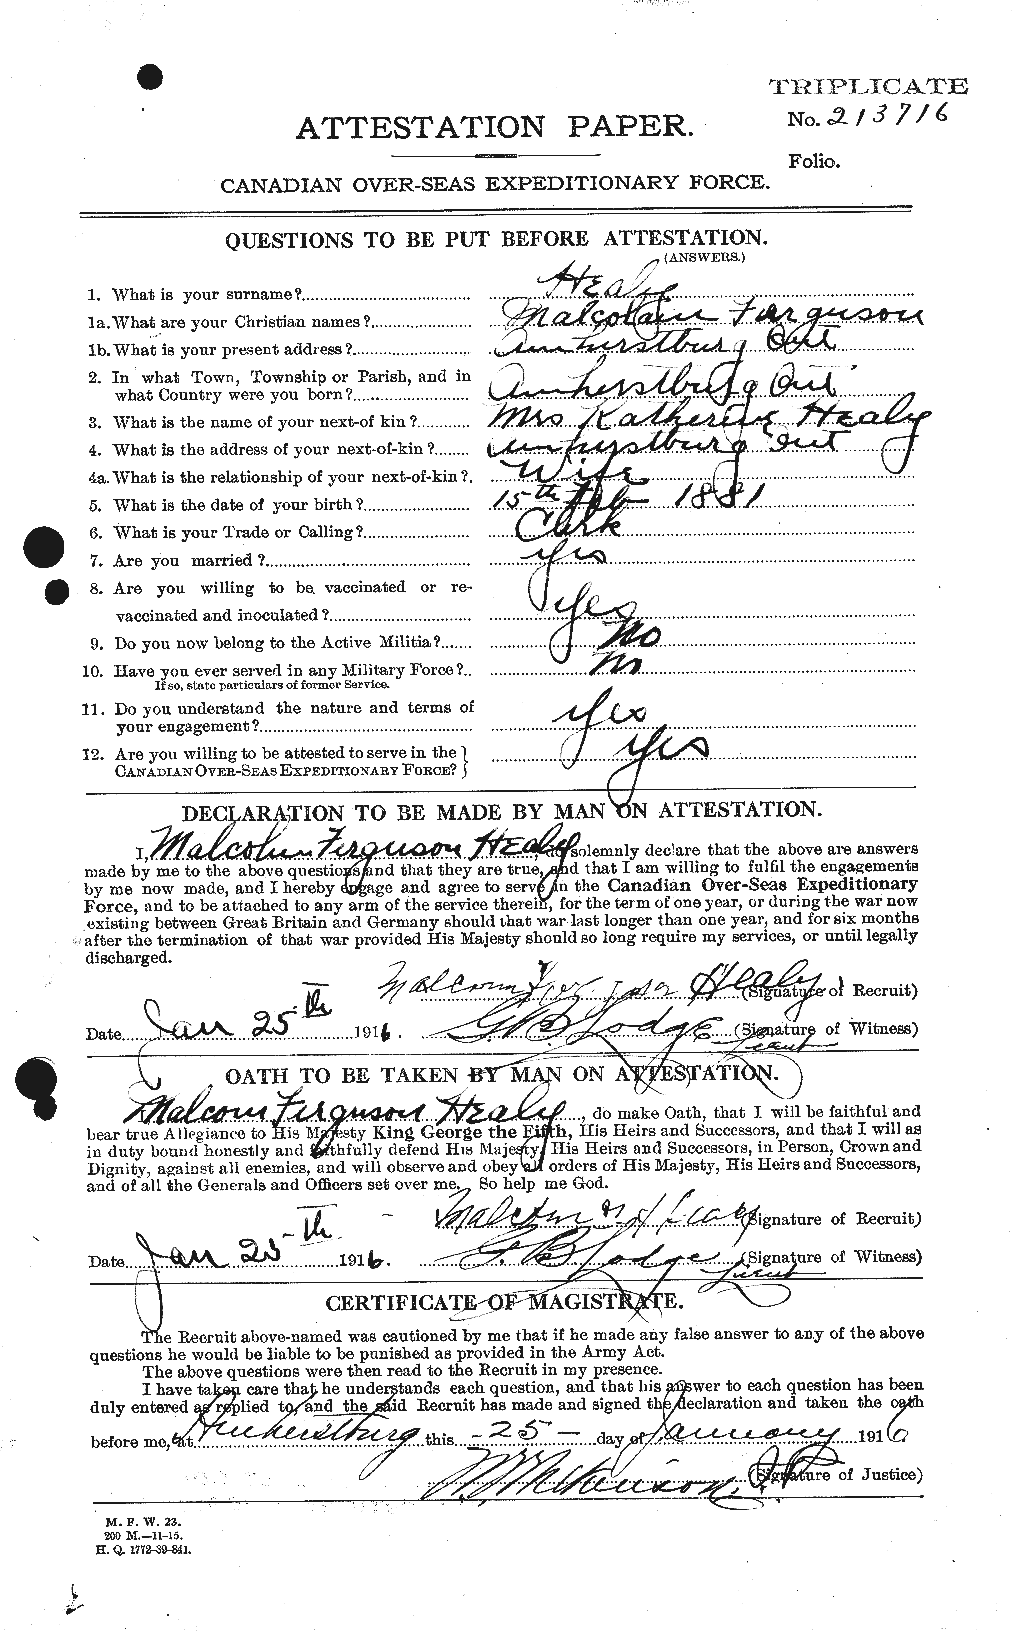 Dossiers du Personnel de la Première Guerre mondiale - CEC 383904a